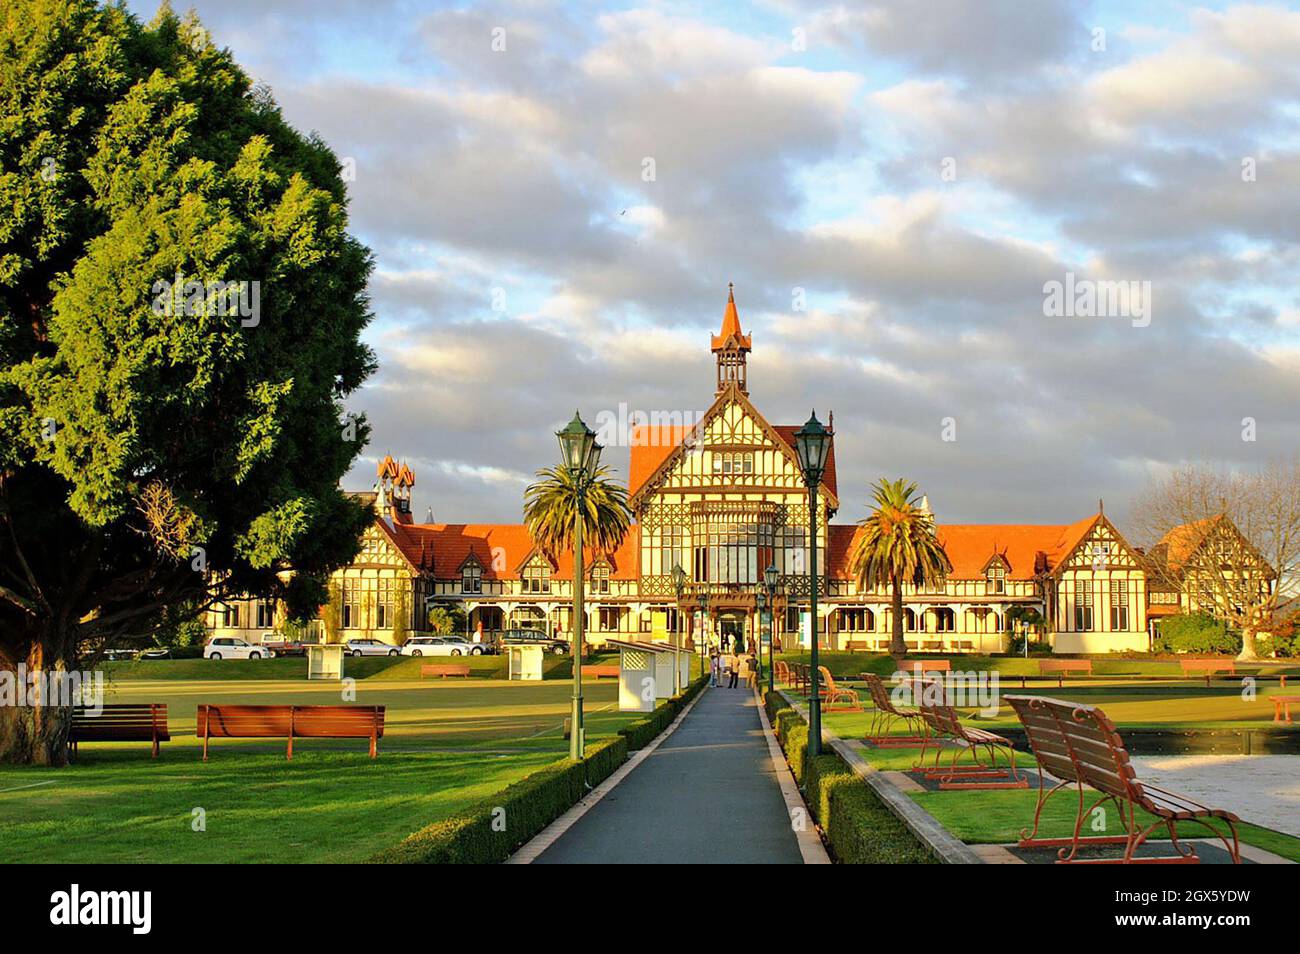 Das Rotorua Museum im elisabethanischen Tudorstil wurde 1908 als Badehaus fertiggestellt und befindet sich in den öffentlichen Gärten der Regierung in Rotorua, Neuseeland. Stockfoto